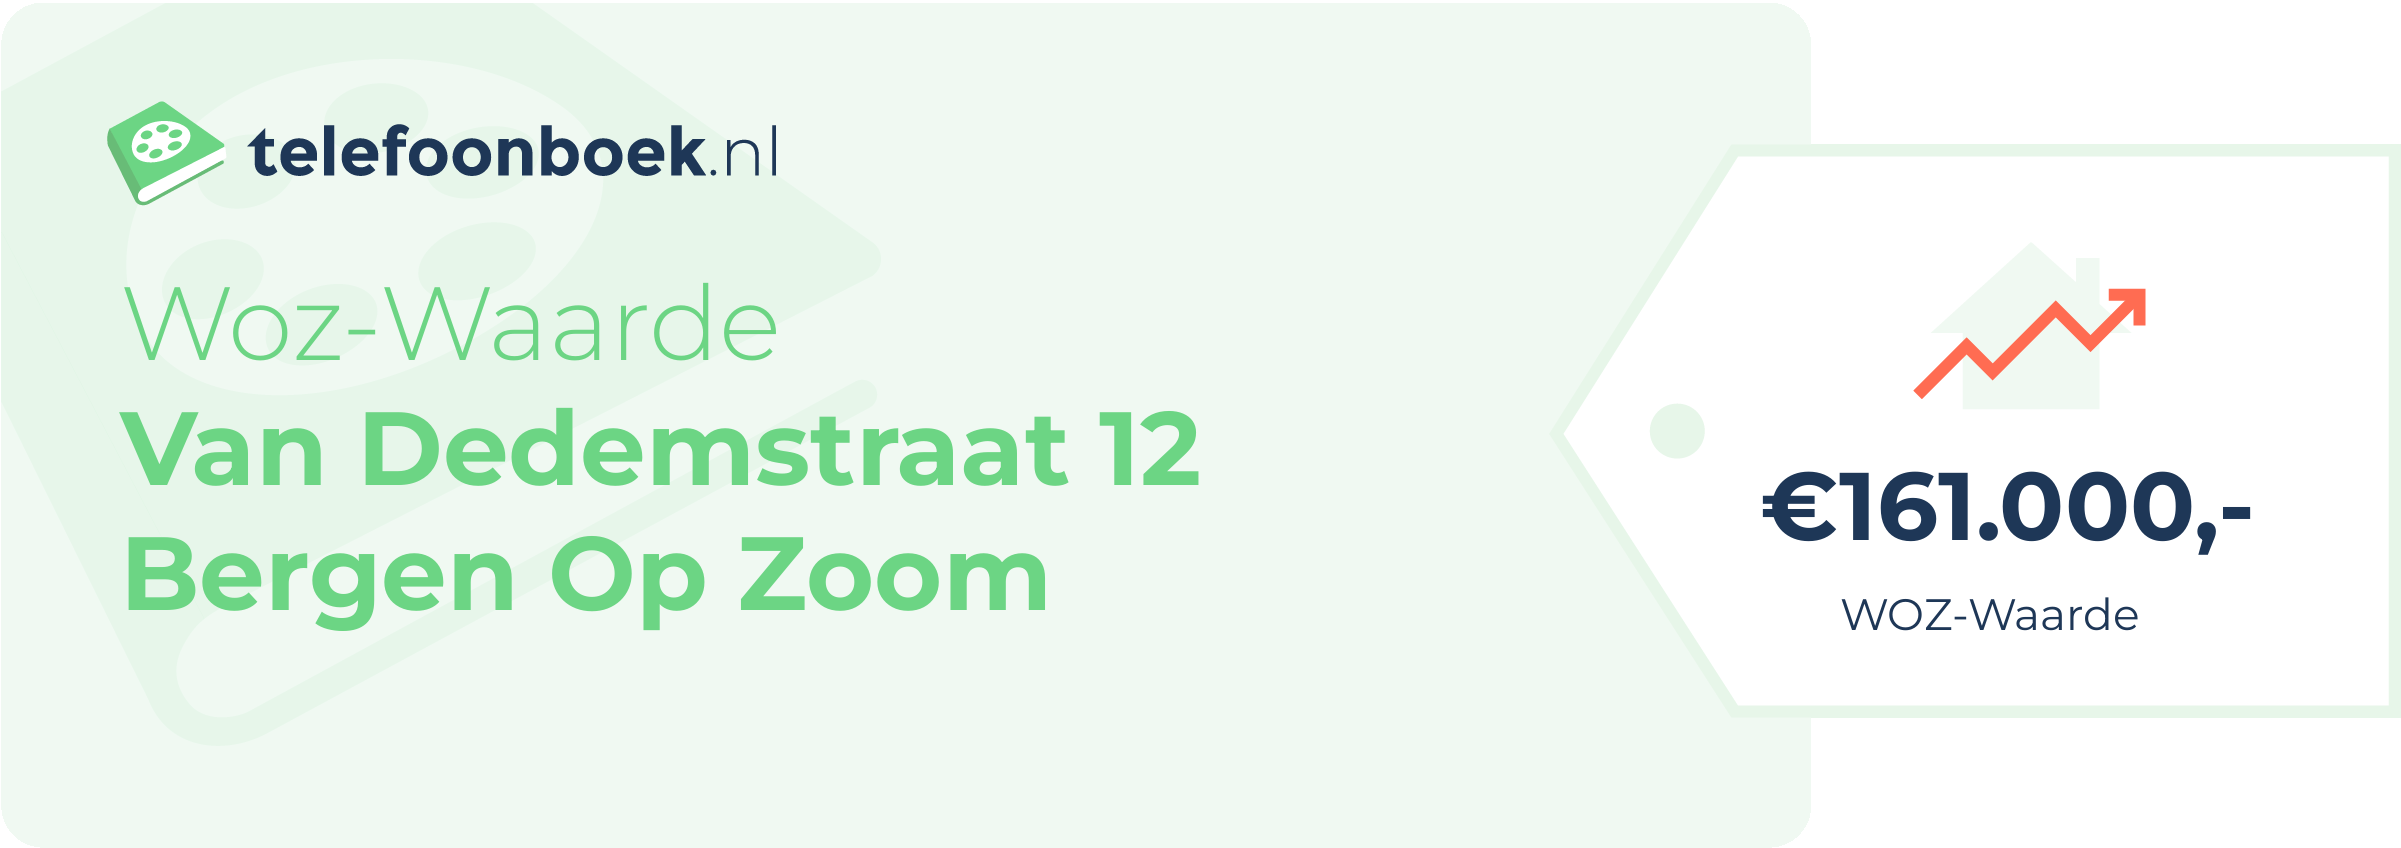 WOZ-waarde Van Dedemstraat 12 Bergen Op Zoom